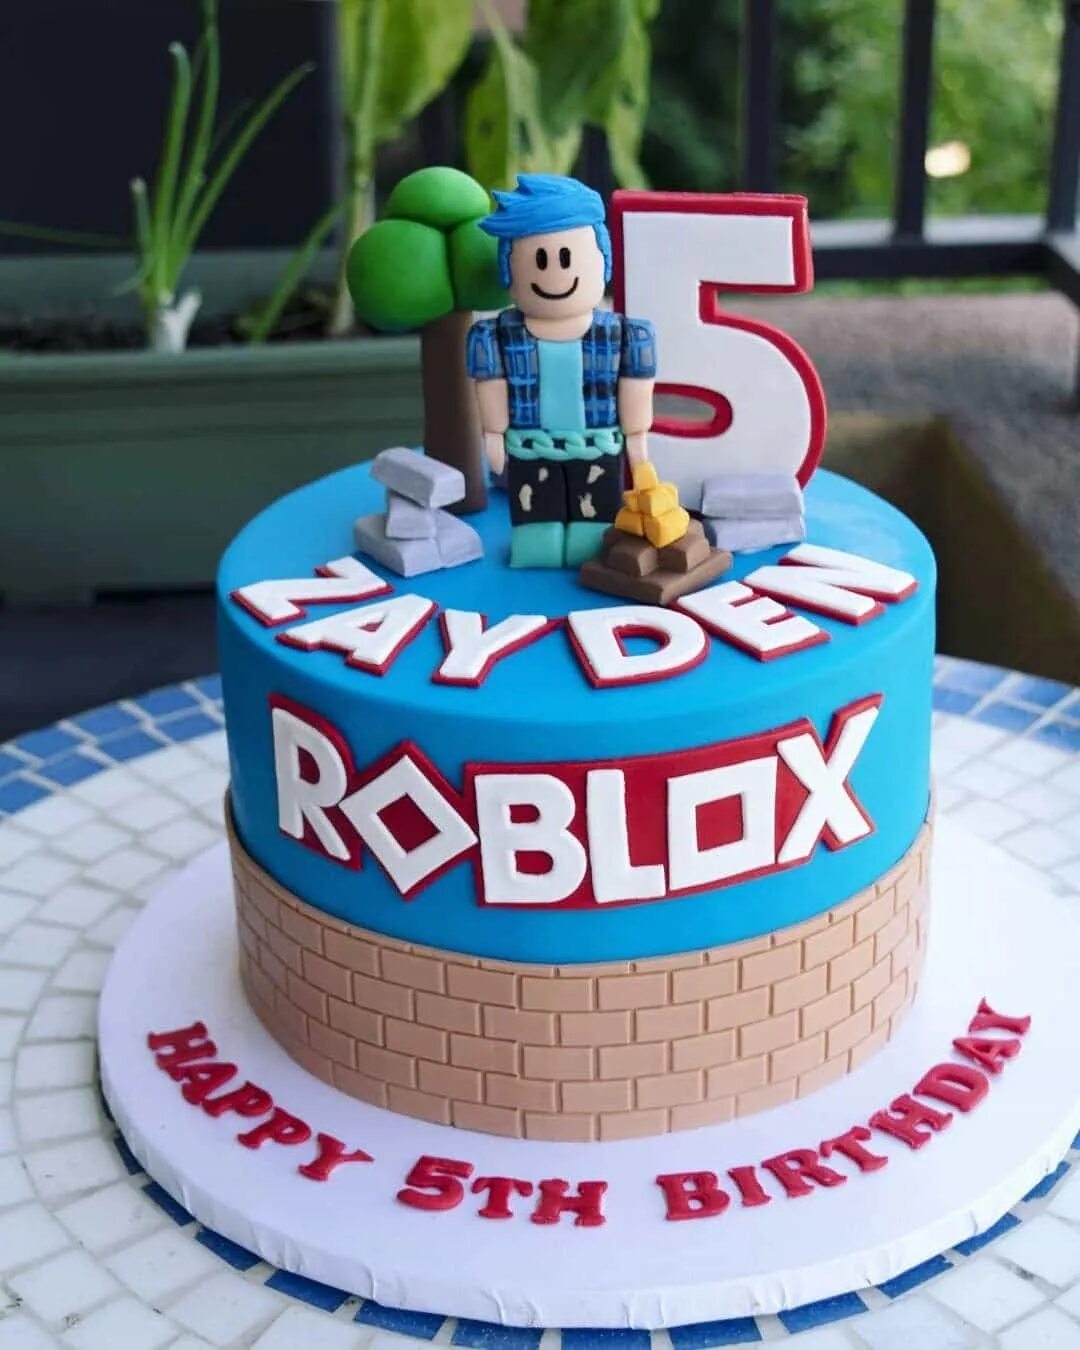 Торт Roblox для мальчика на день рождения. Торт РОБЛОКС для мальчиков на день рождения. РОБЛОКС торт торт для мальчика. Торт РОБЛОКС для мальчиков. С днем рождения роблокс